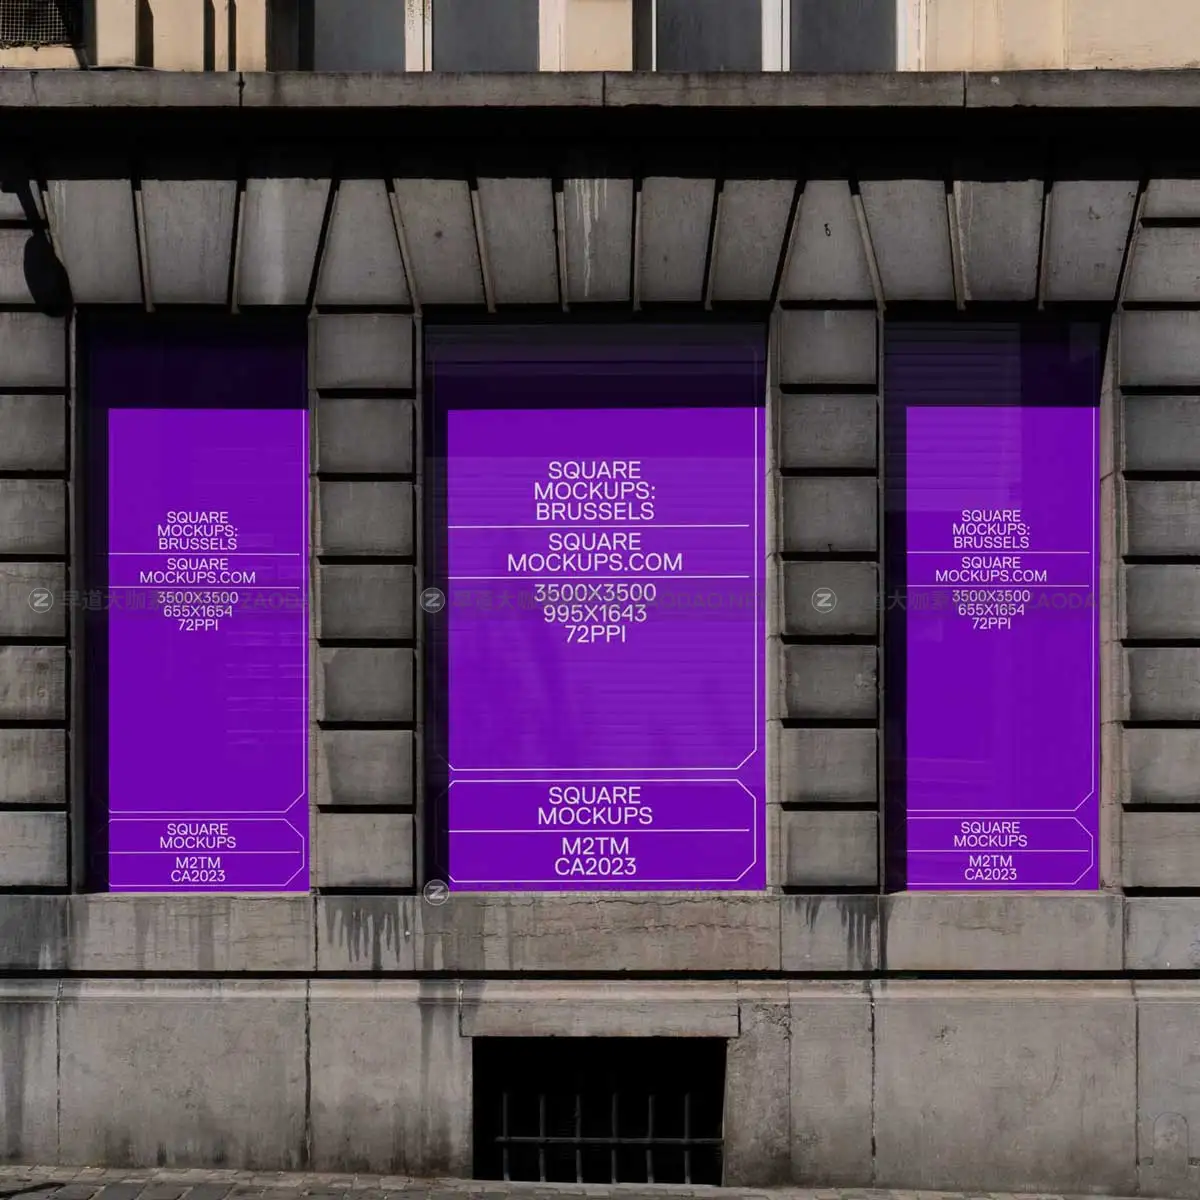 时尚欧美风城市街头墙体商场门店玻璃贴纸海报招贴广告牌设计展示PSD样机模板 Windowfront Mockup Scene Brussels Series Vol1插图4